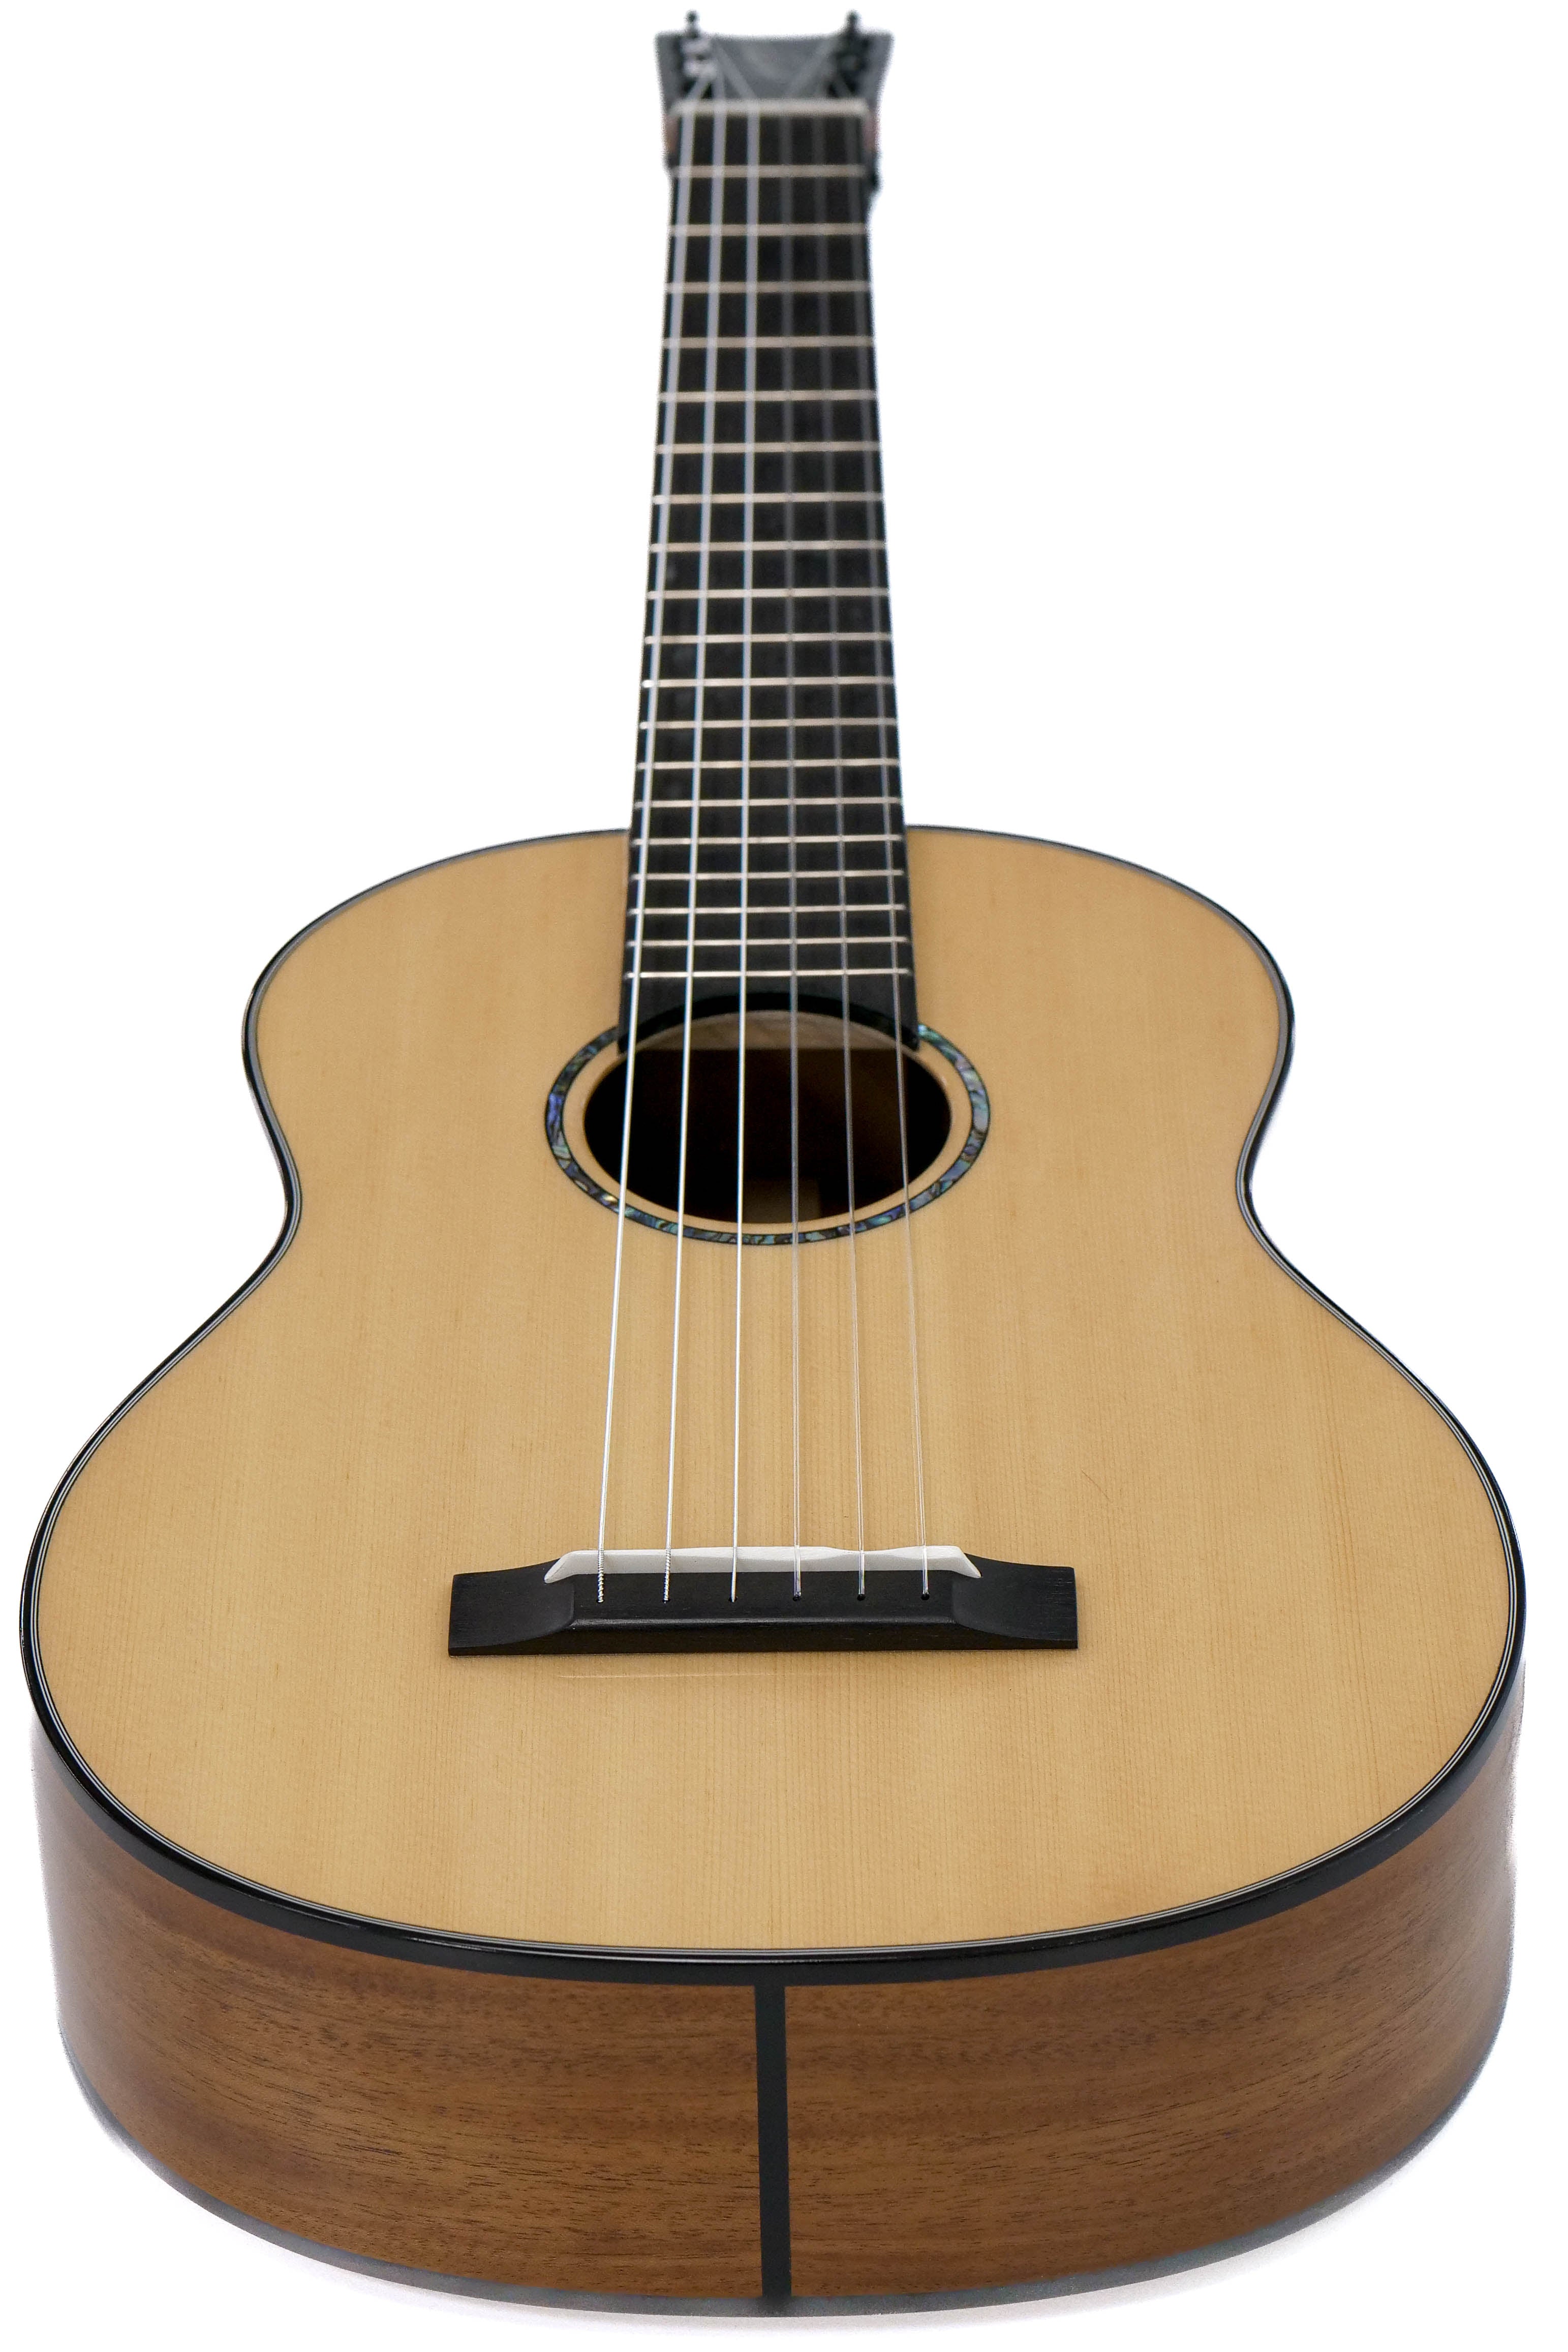 Romero Creations RC-P6-SM Parlor Guitar Spruce Mahogany "KIYA" Tuned E to E